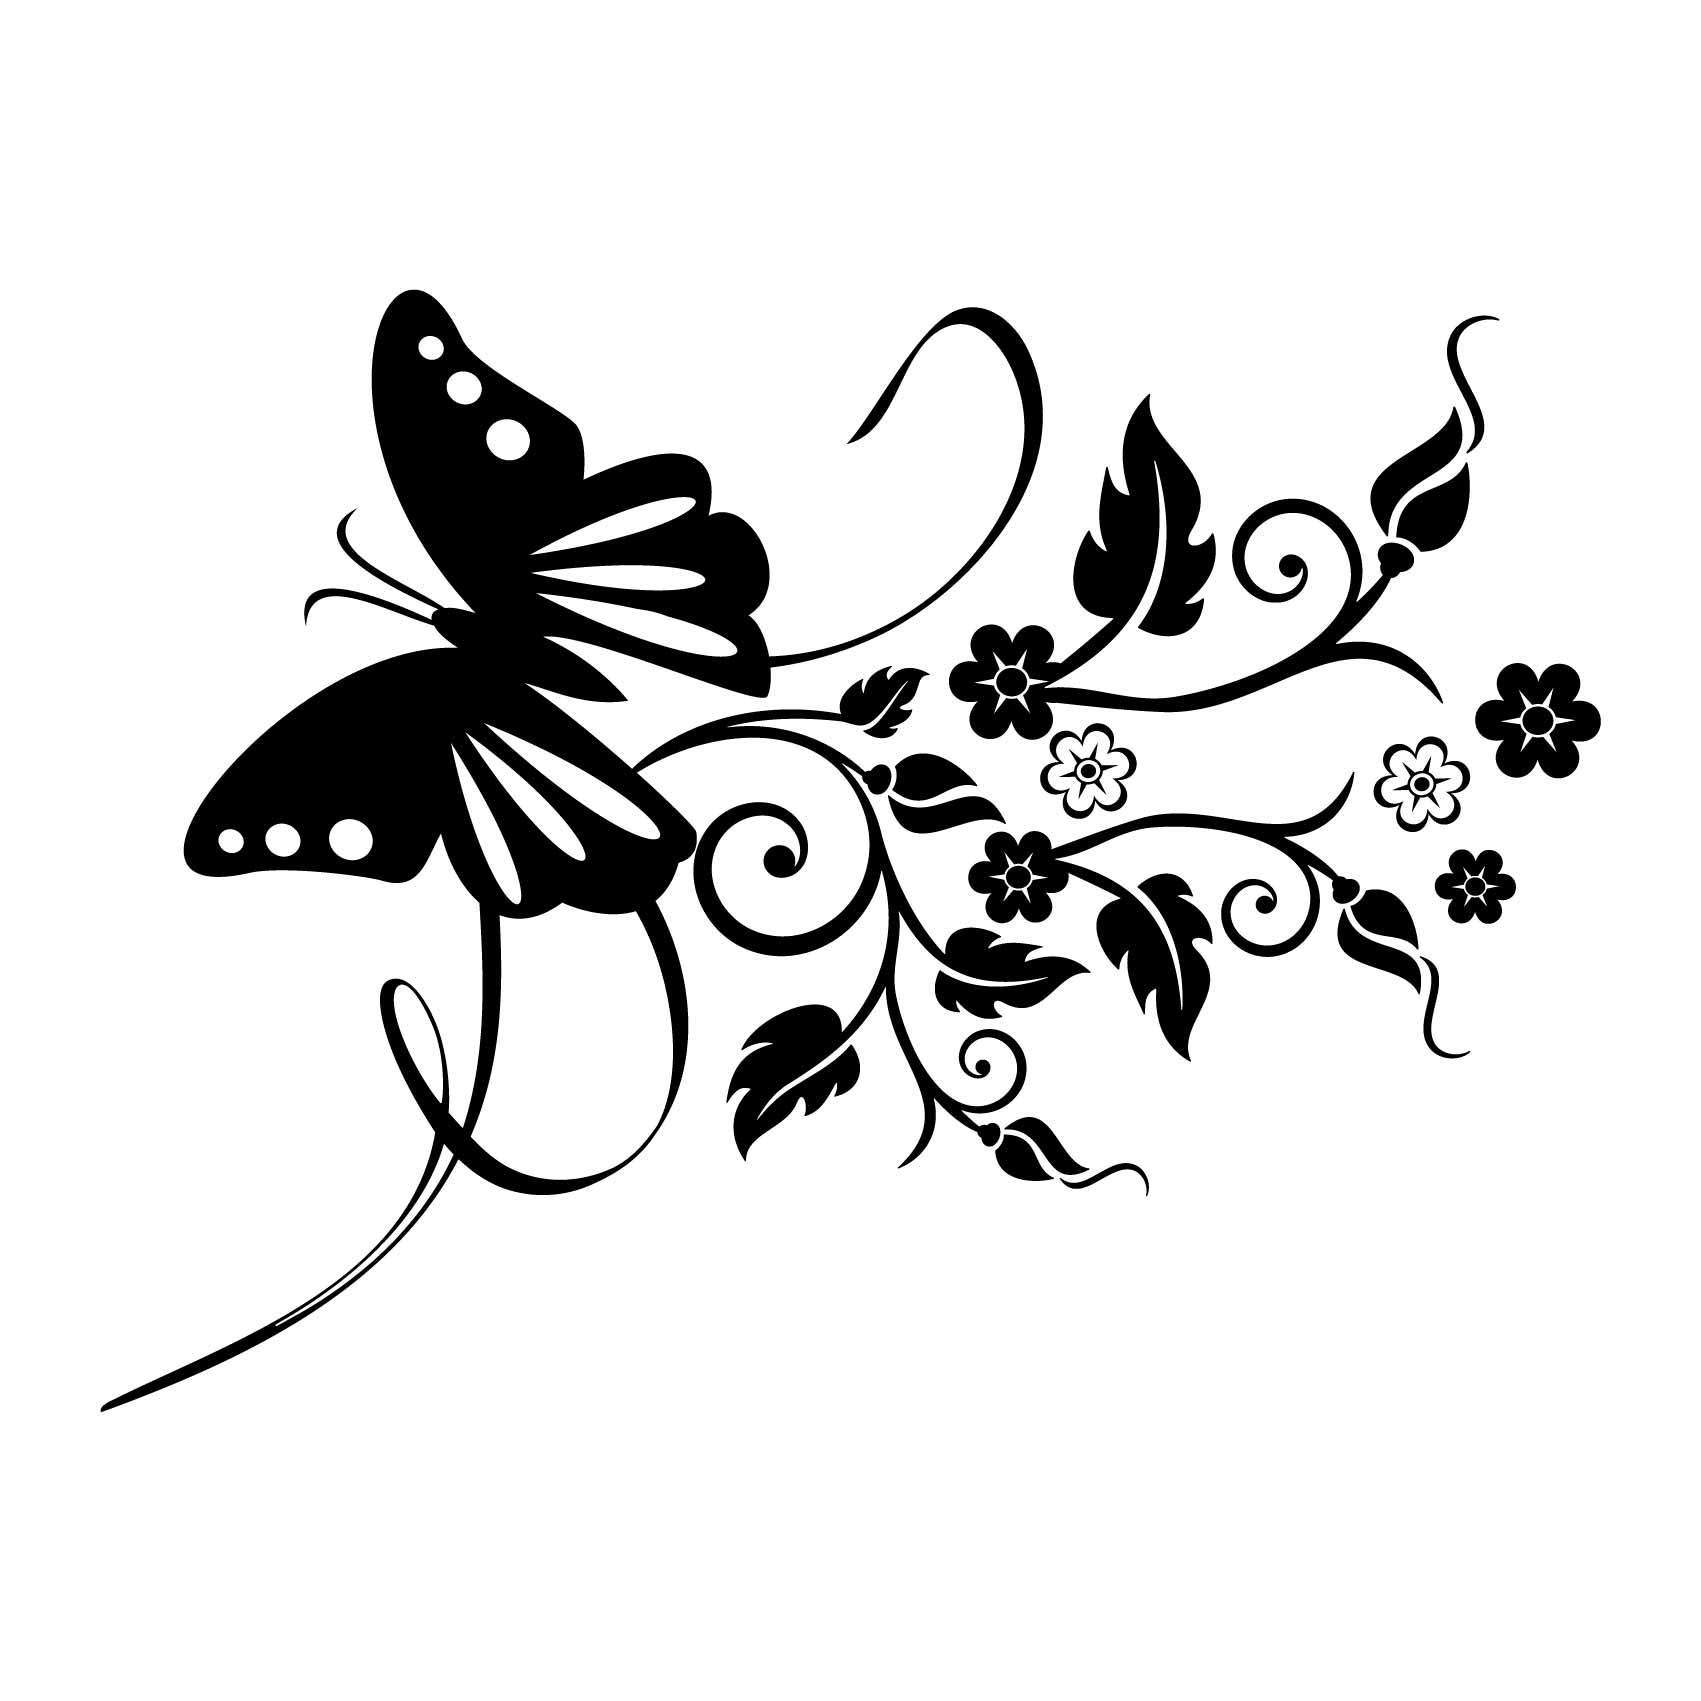 stickers-papillon-design-ref20papillon-stickers-muraux-papillon-autocollant-papillons-deco-sticker-mural-chambre-enfant-fille-bébé-salon-(2)